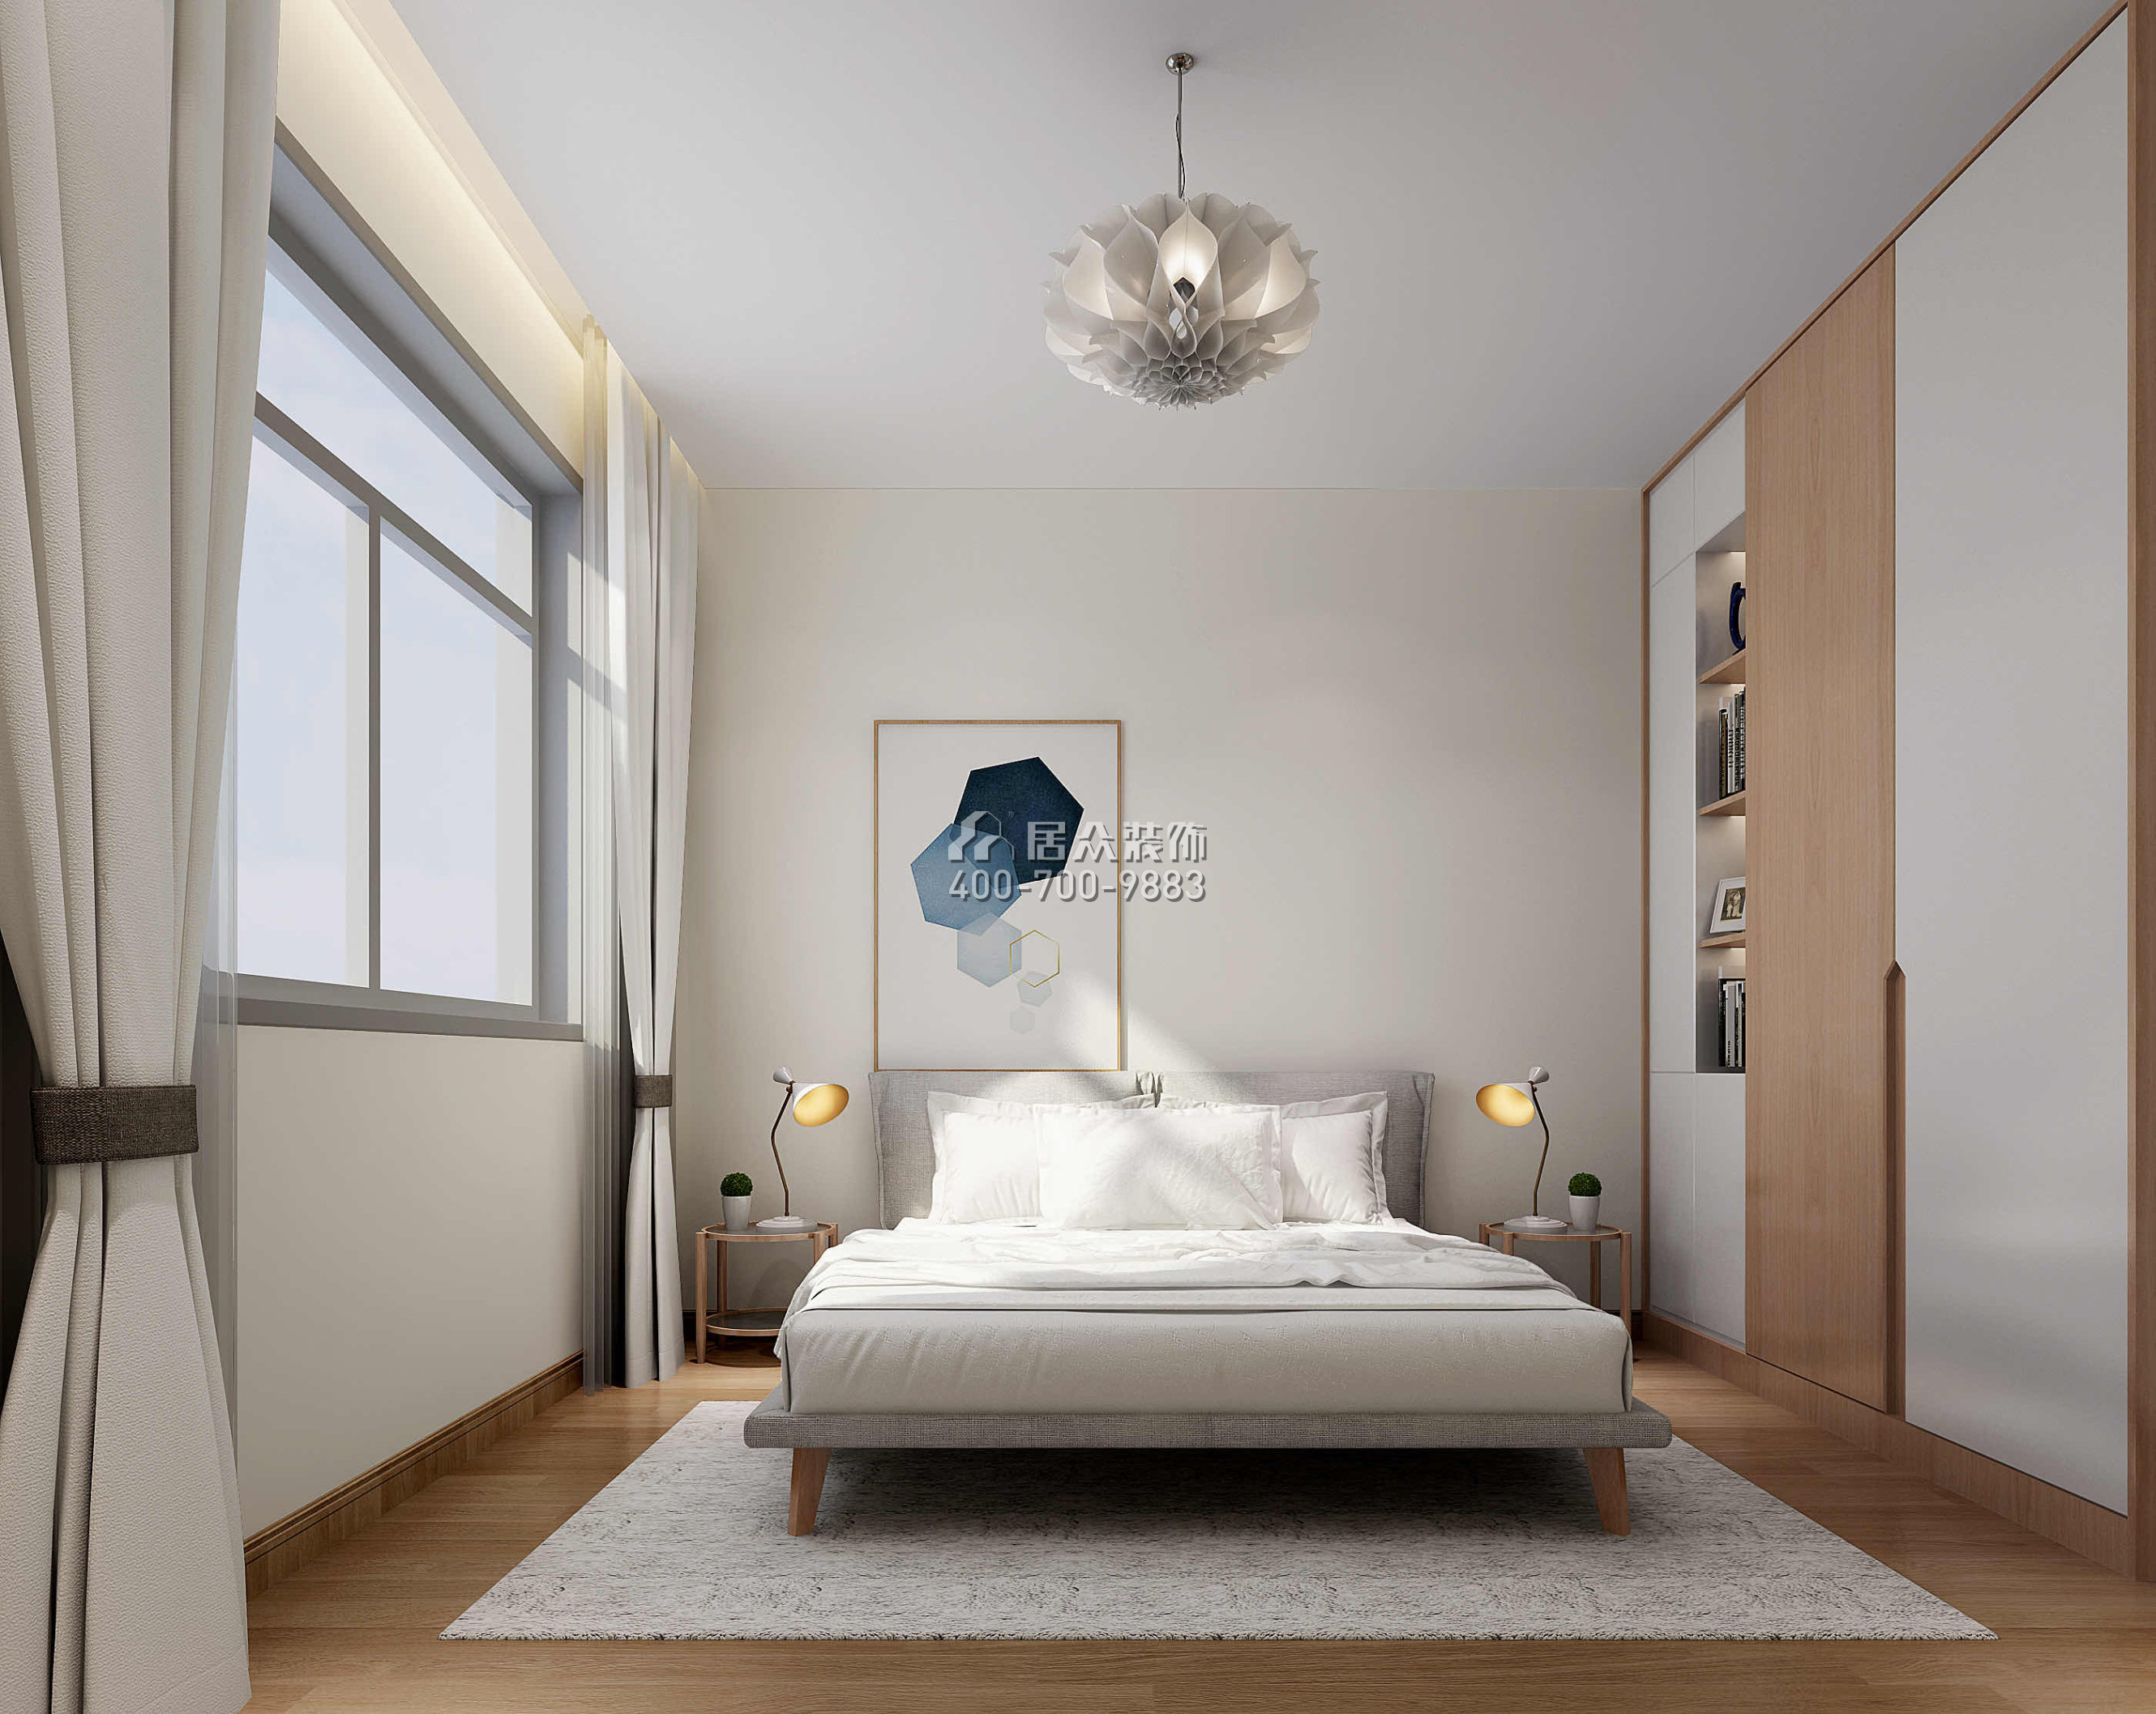 中信紅樹山330平方米現代簡約風格別墅戶型臥室裝修效果圖